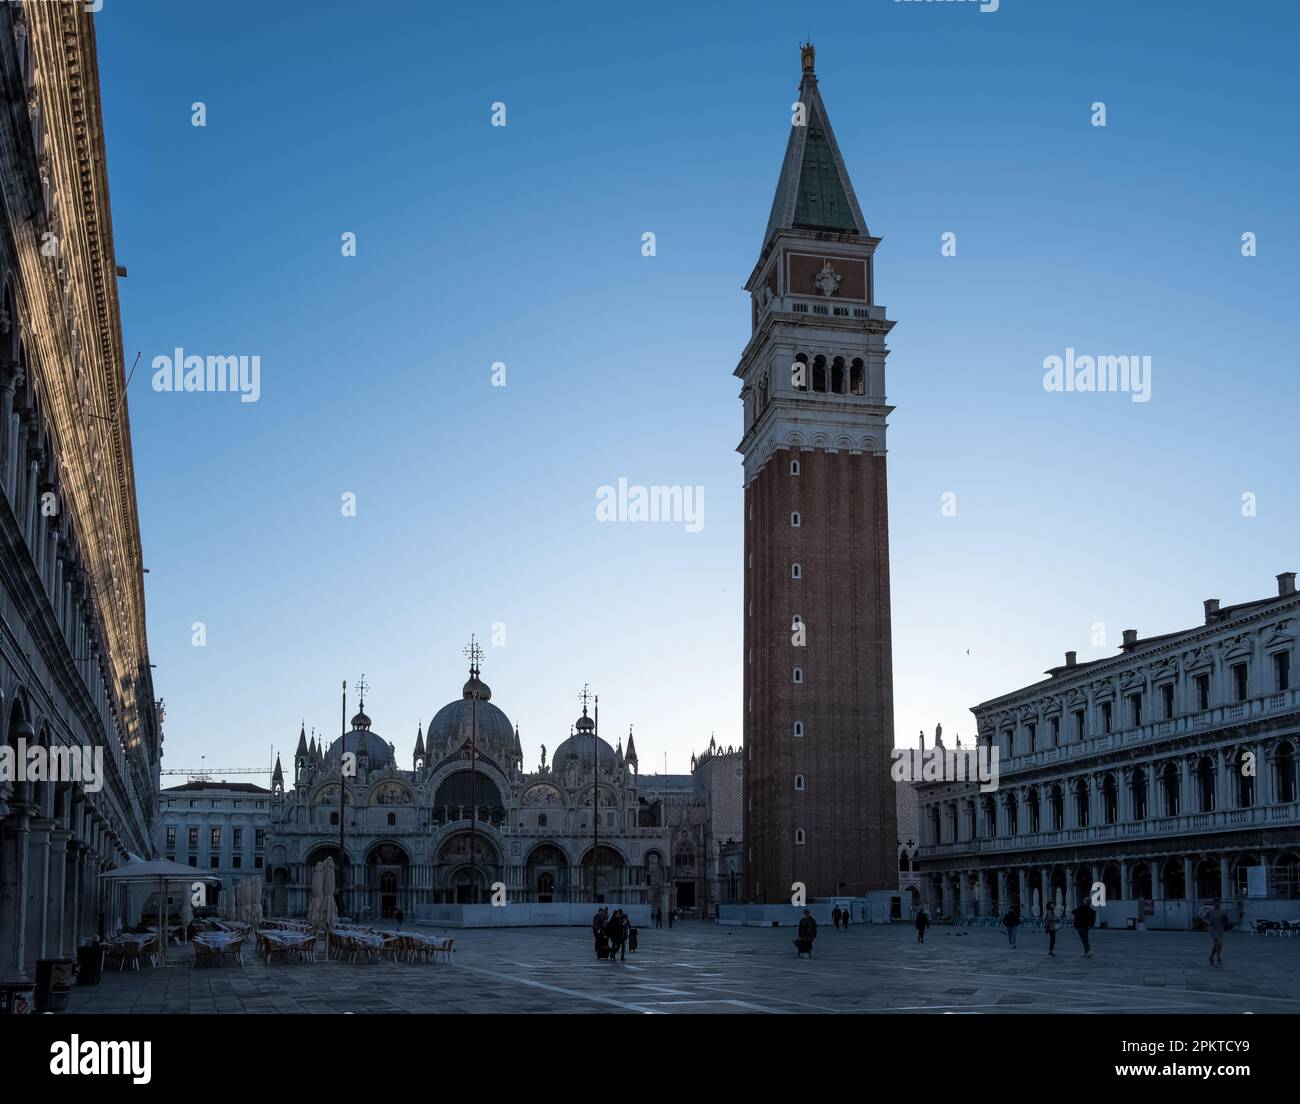 Detalle arquitectónico de la Piazza San Marco (Plaza de San Marcos), la principal plaza pública de Venecia, Italia Foto de stock